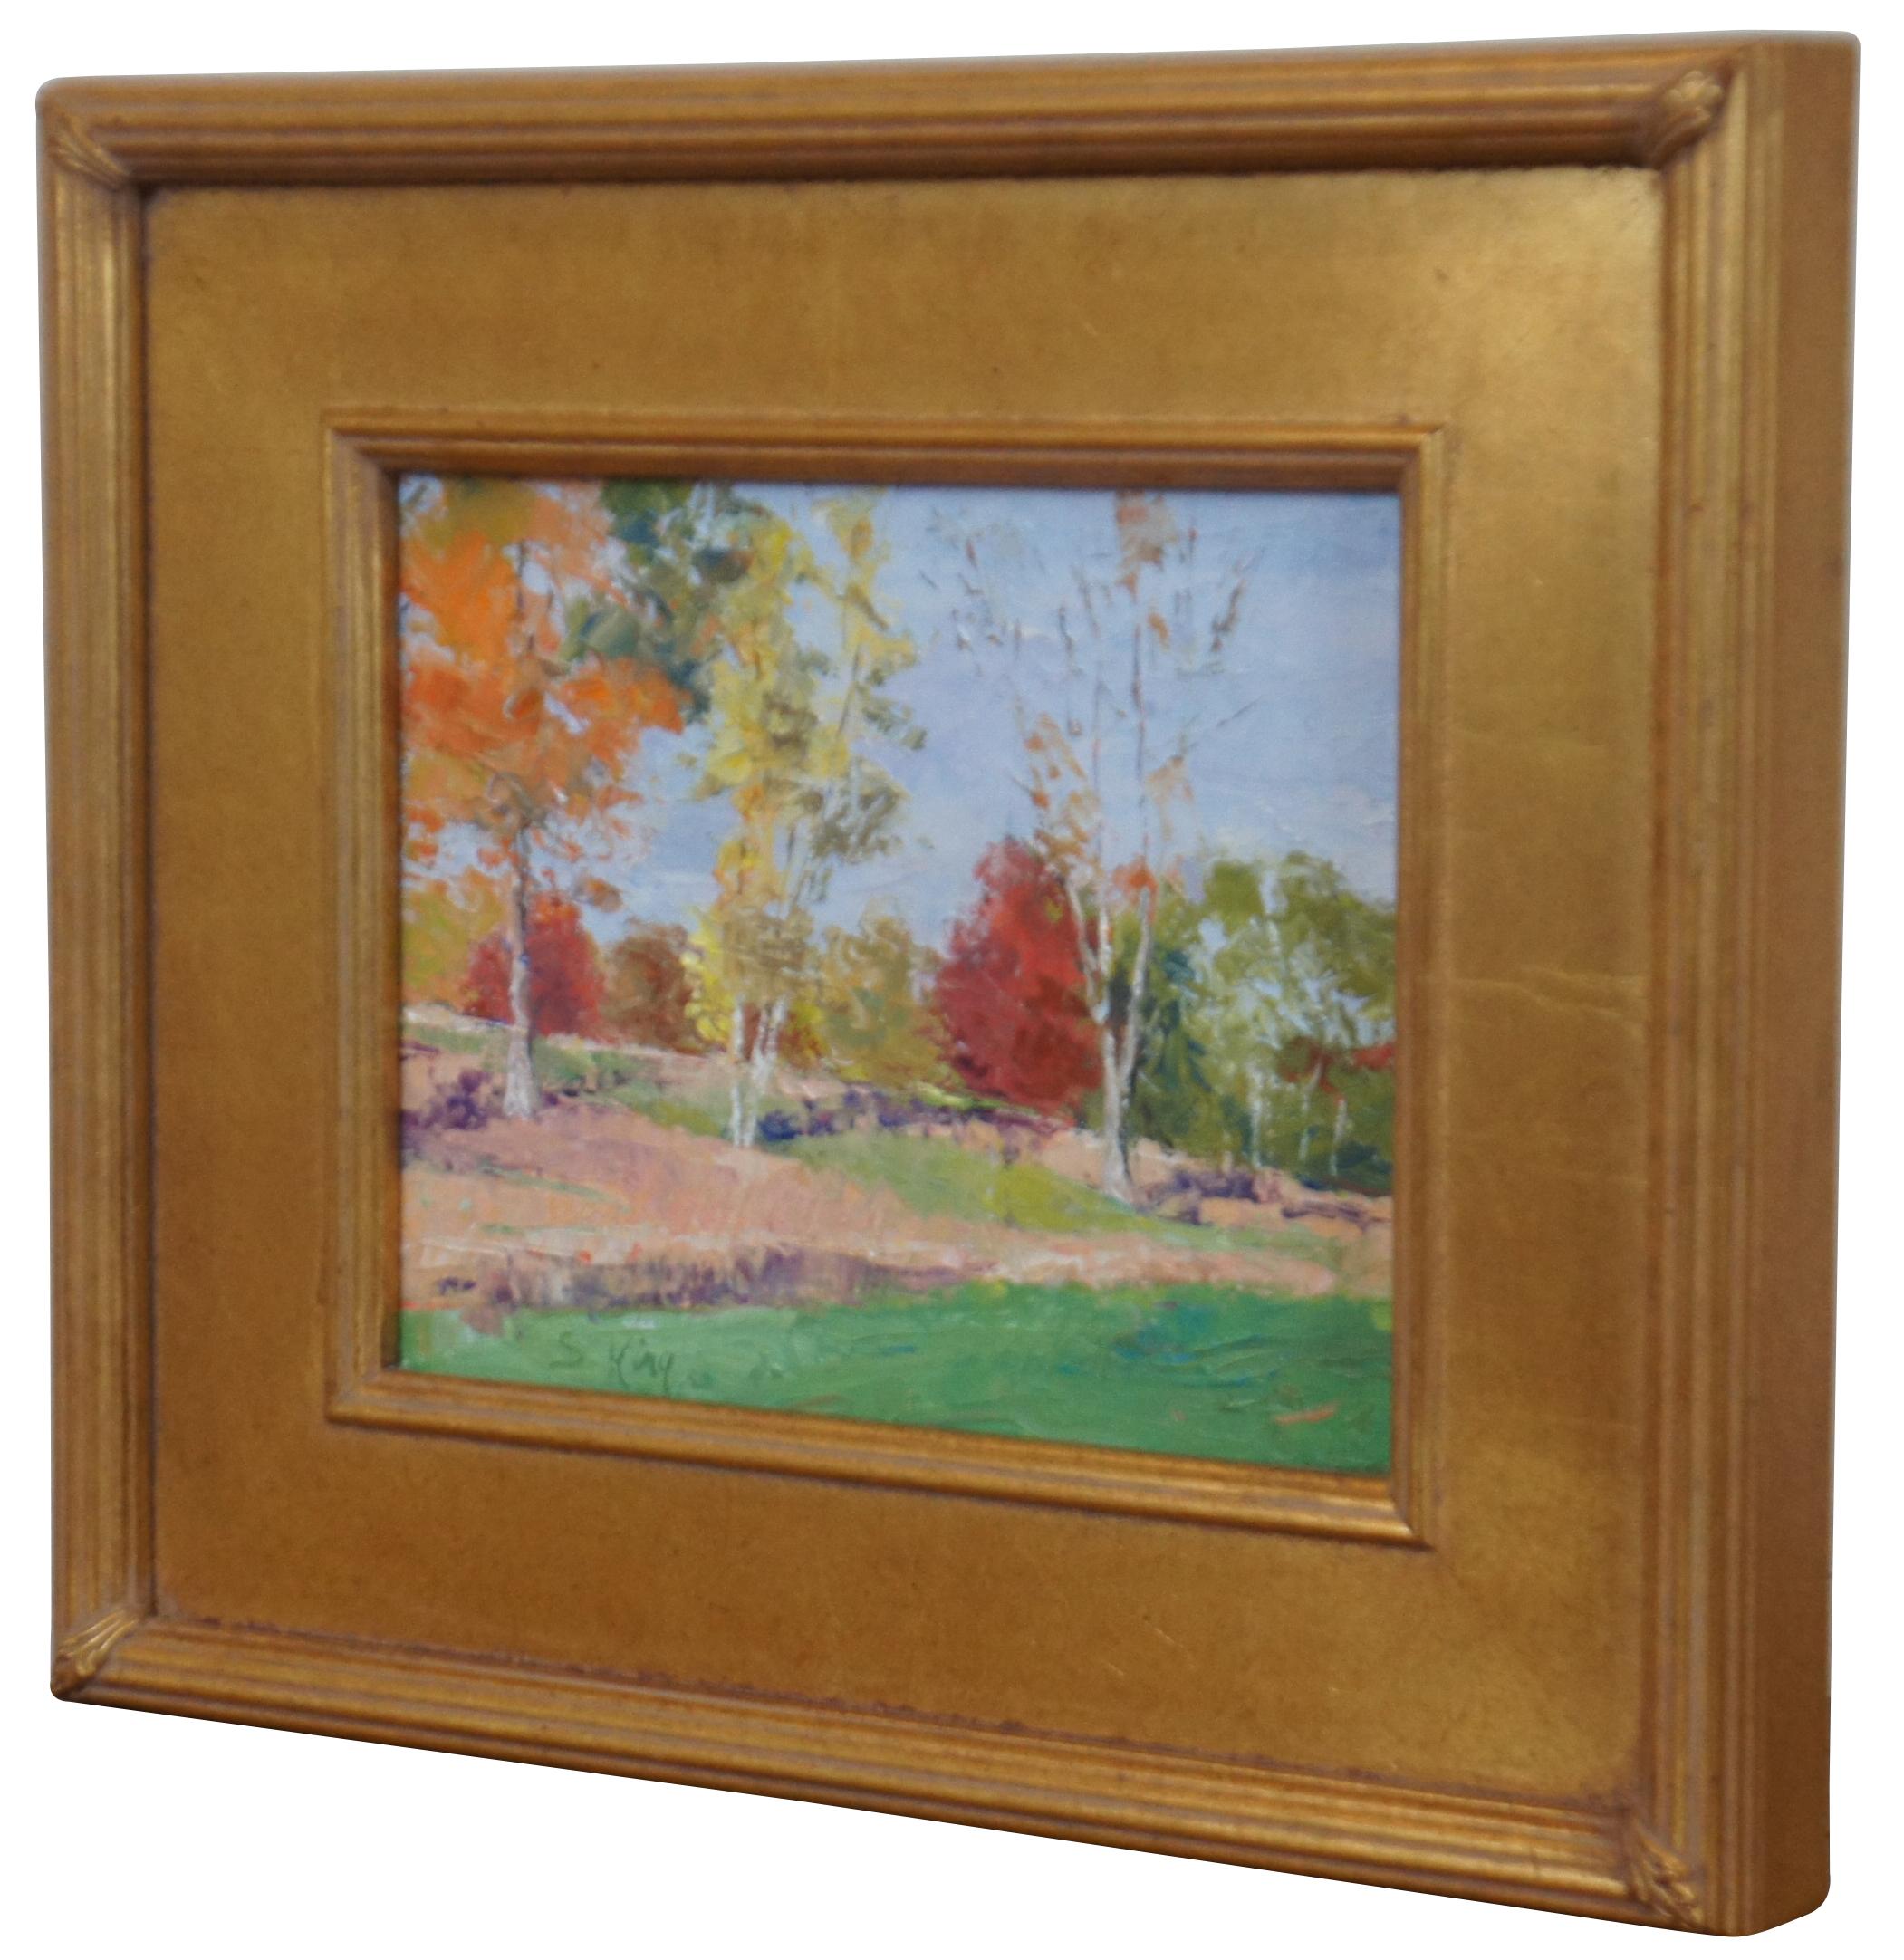 Peinture impressionniste à l'huile sur toile de l'artiste Susie King, de Dayton, Ohio, représentant un paysage d'arbres d'automne. Encadré en or.

Mesures : 15,75